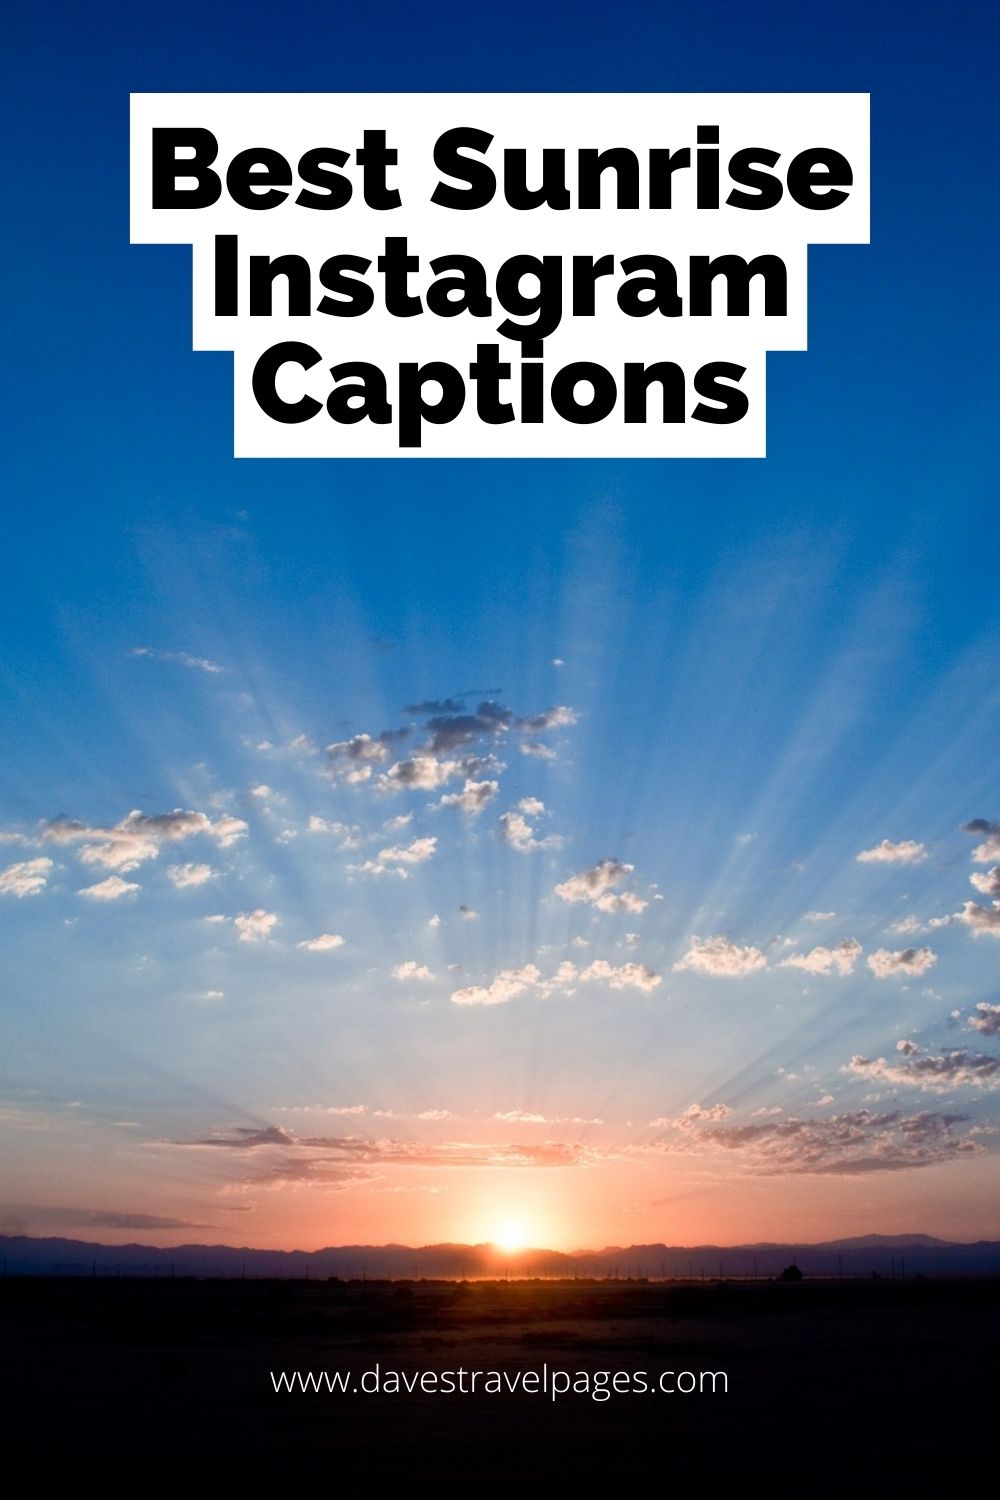 Instagram Captions About Sunrises